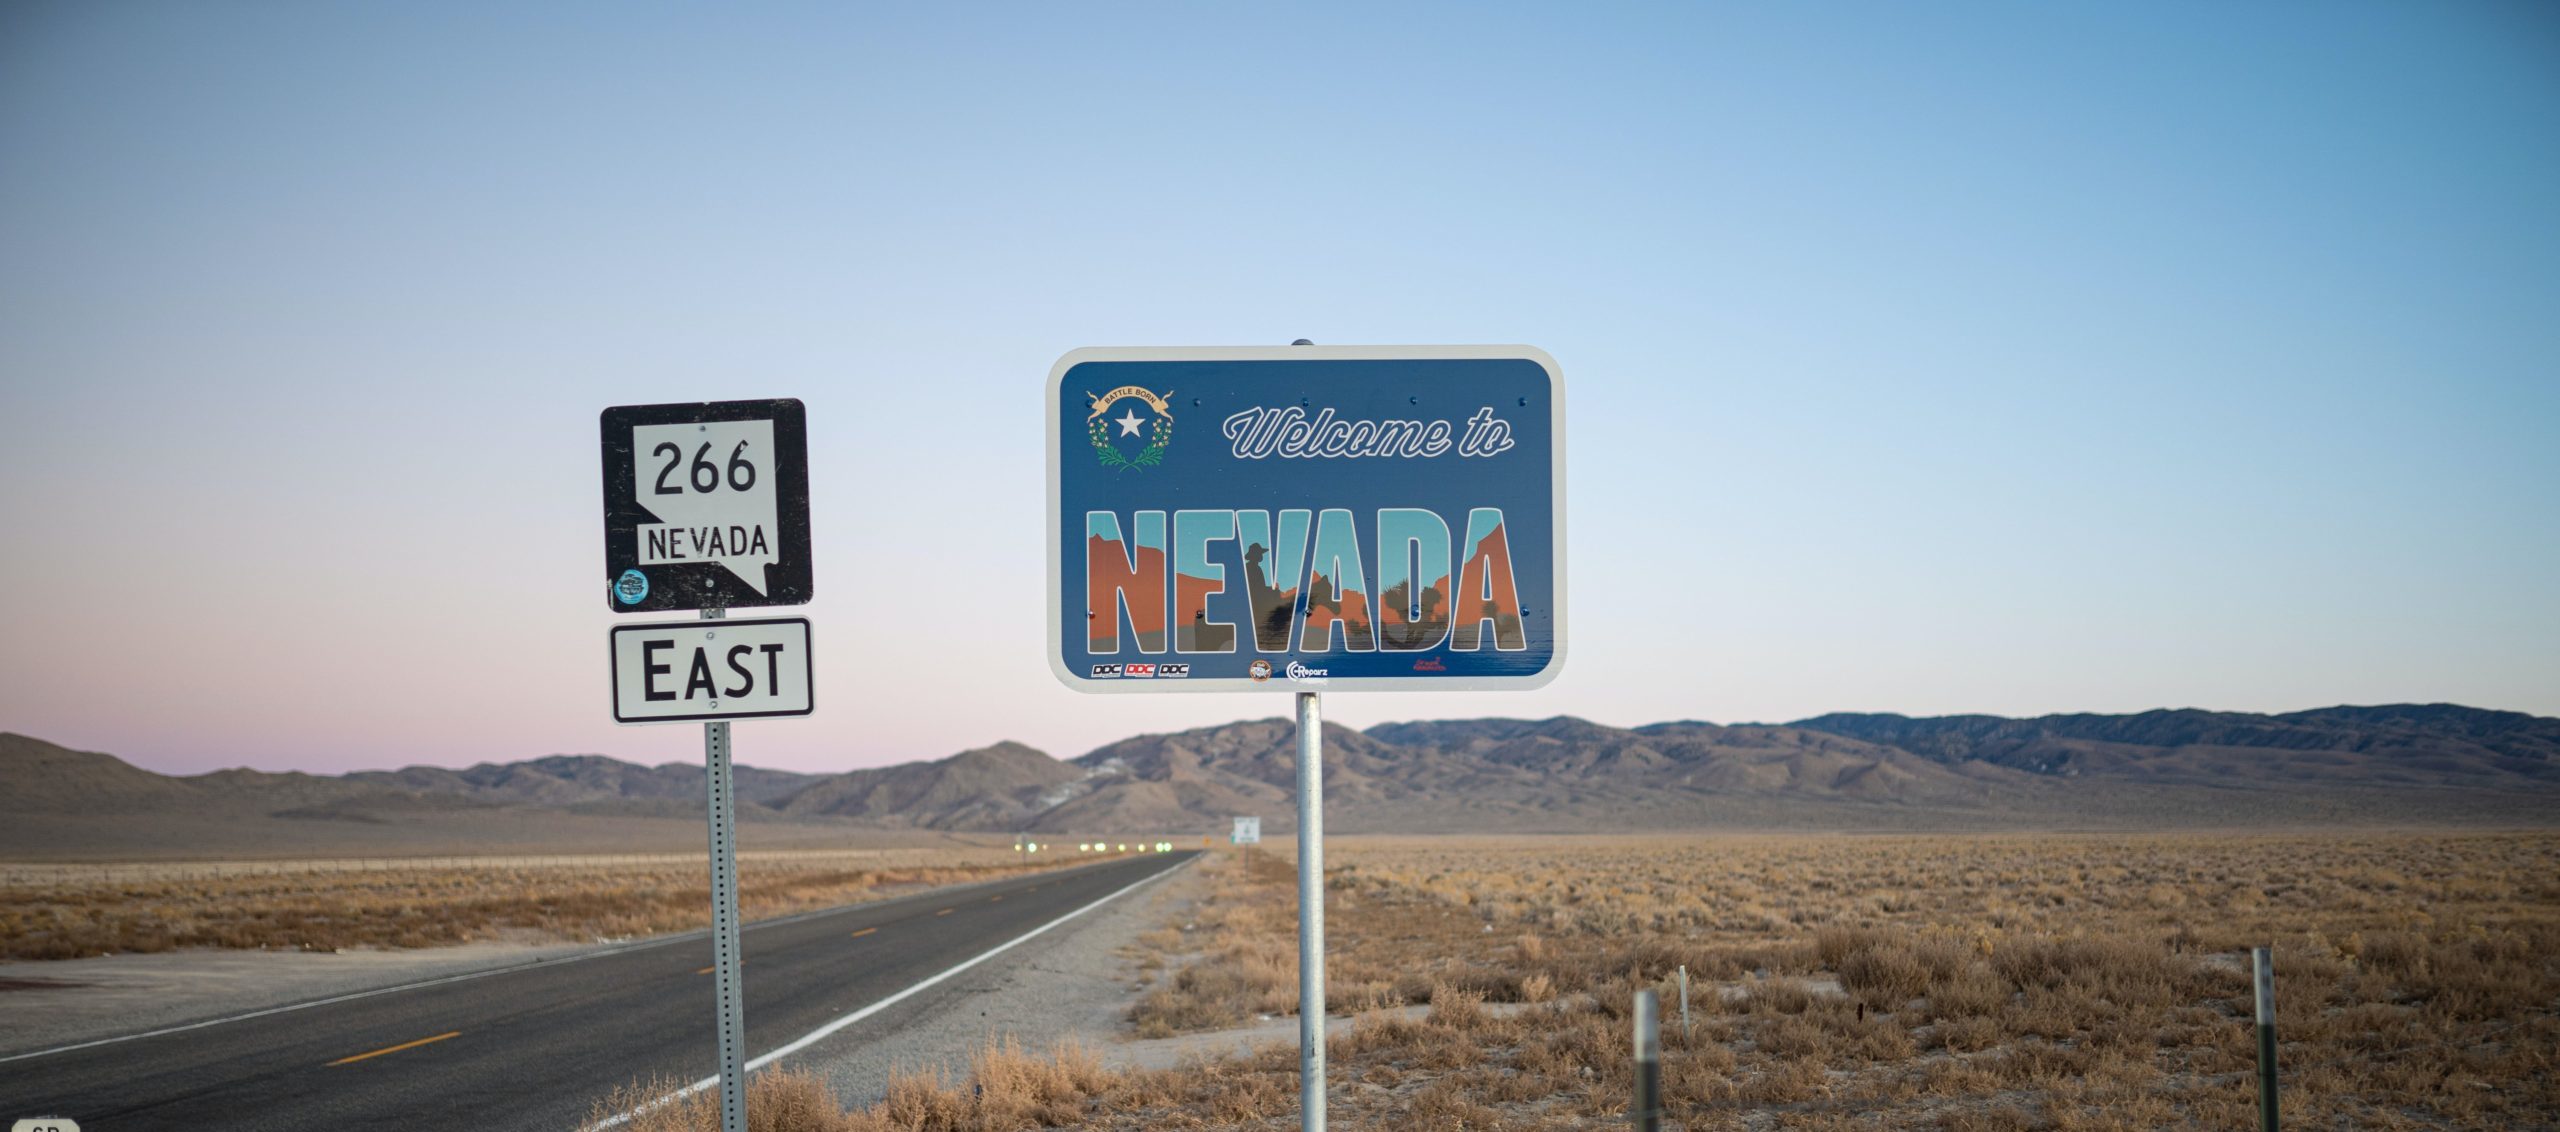 Marijuana DUIs in Nevada